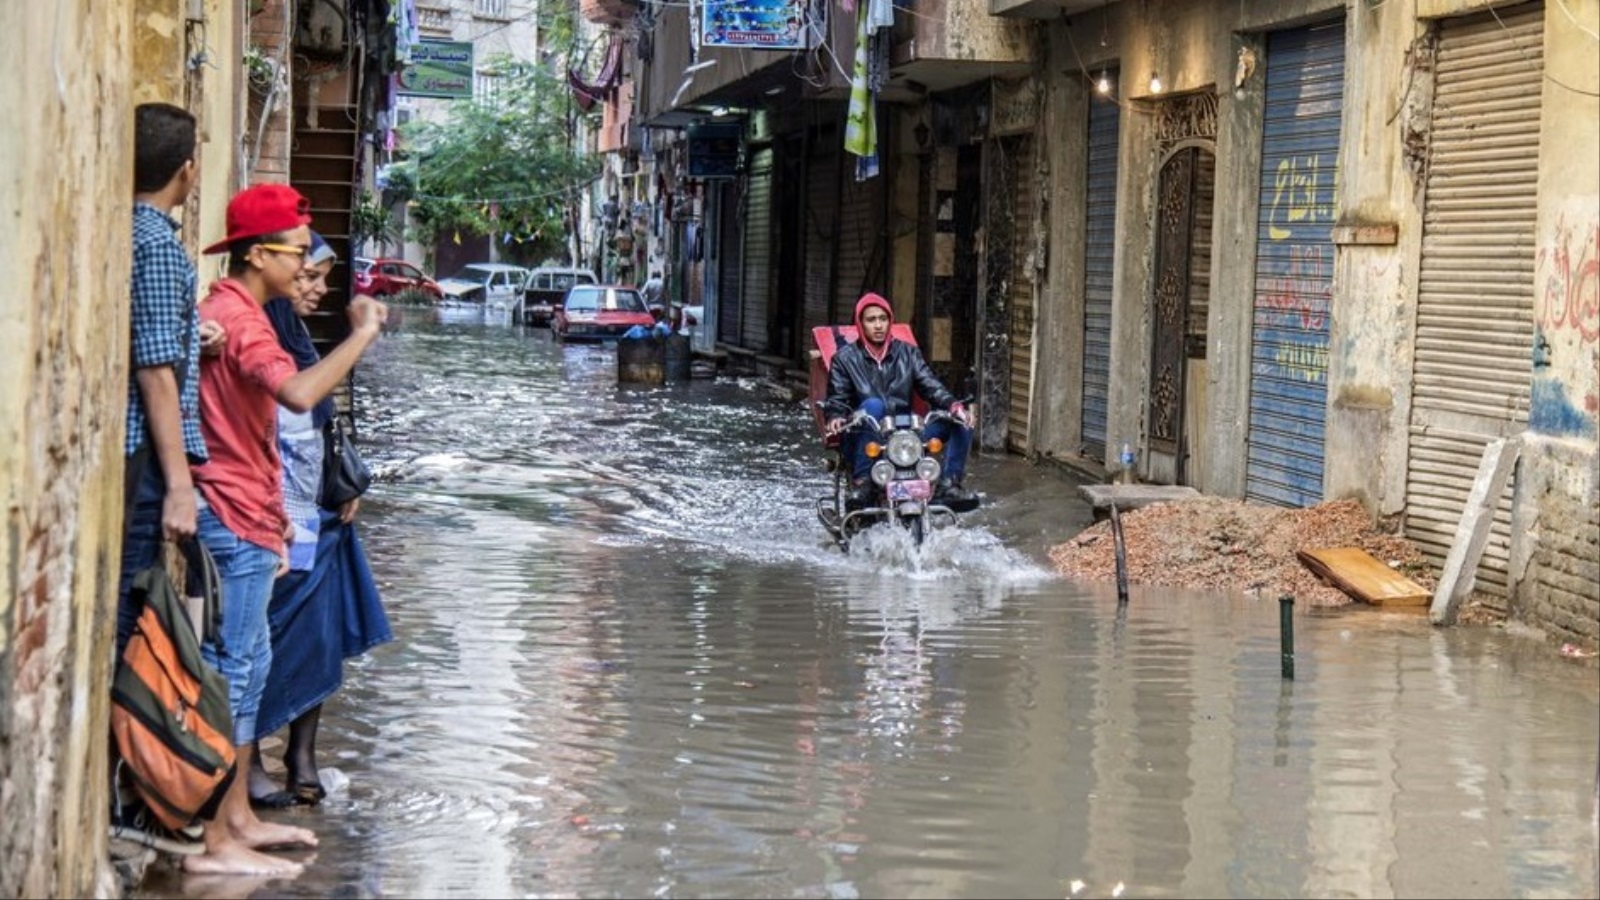 المياه تغمر شوارع ومنازل الإسكندرية سنويا في فصل الشتاء خلال الأعوام الأخيرة (أسوشيتد برس)